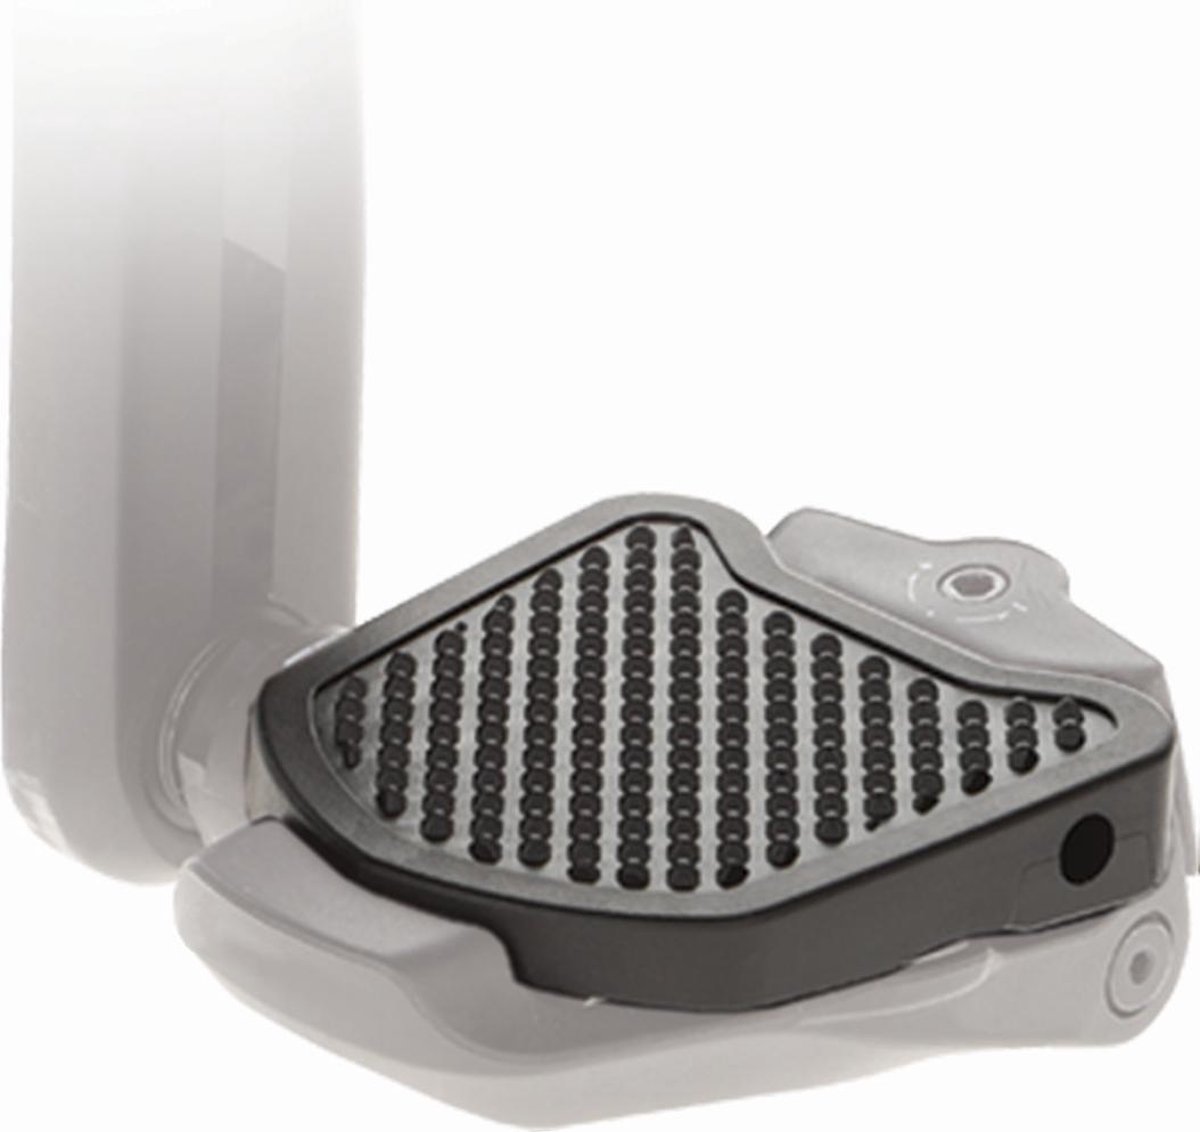 PP Pedal Plate | KEO | Adapter voor Look KEO compatible klikpedalen | Geen extra cleats benodigd | Verandert klikpedalen in platform pedalen | Voor extra comfort en veiligheid …